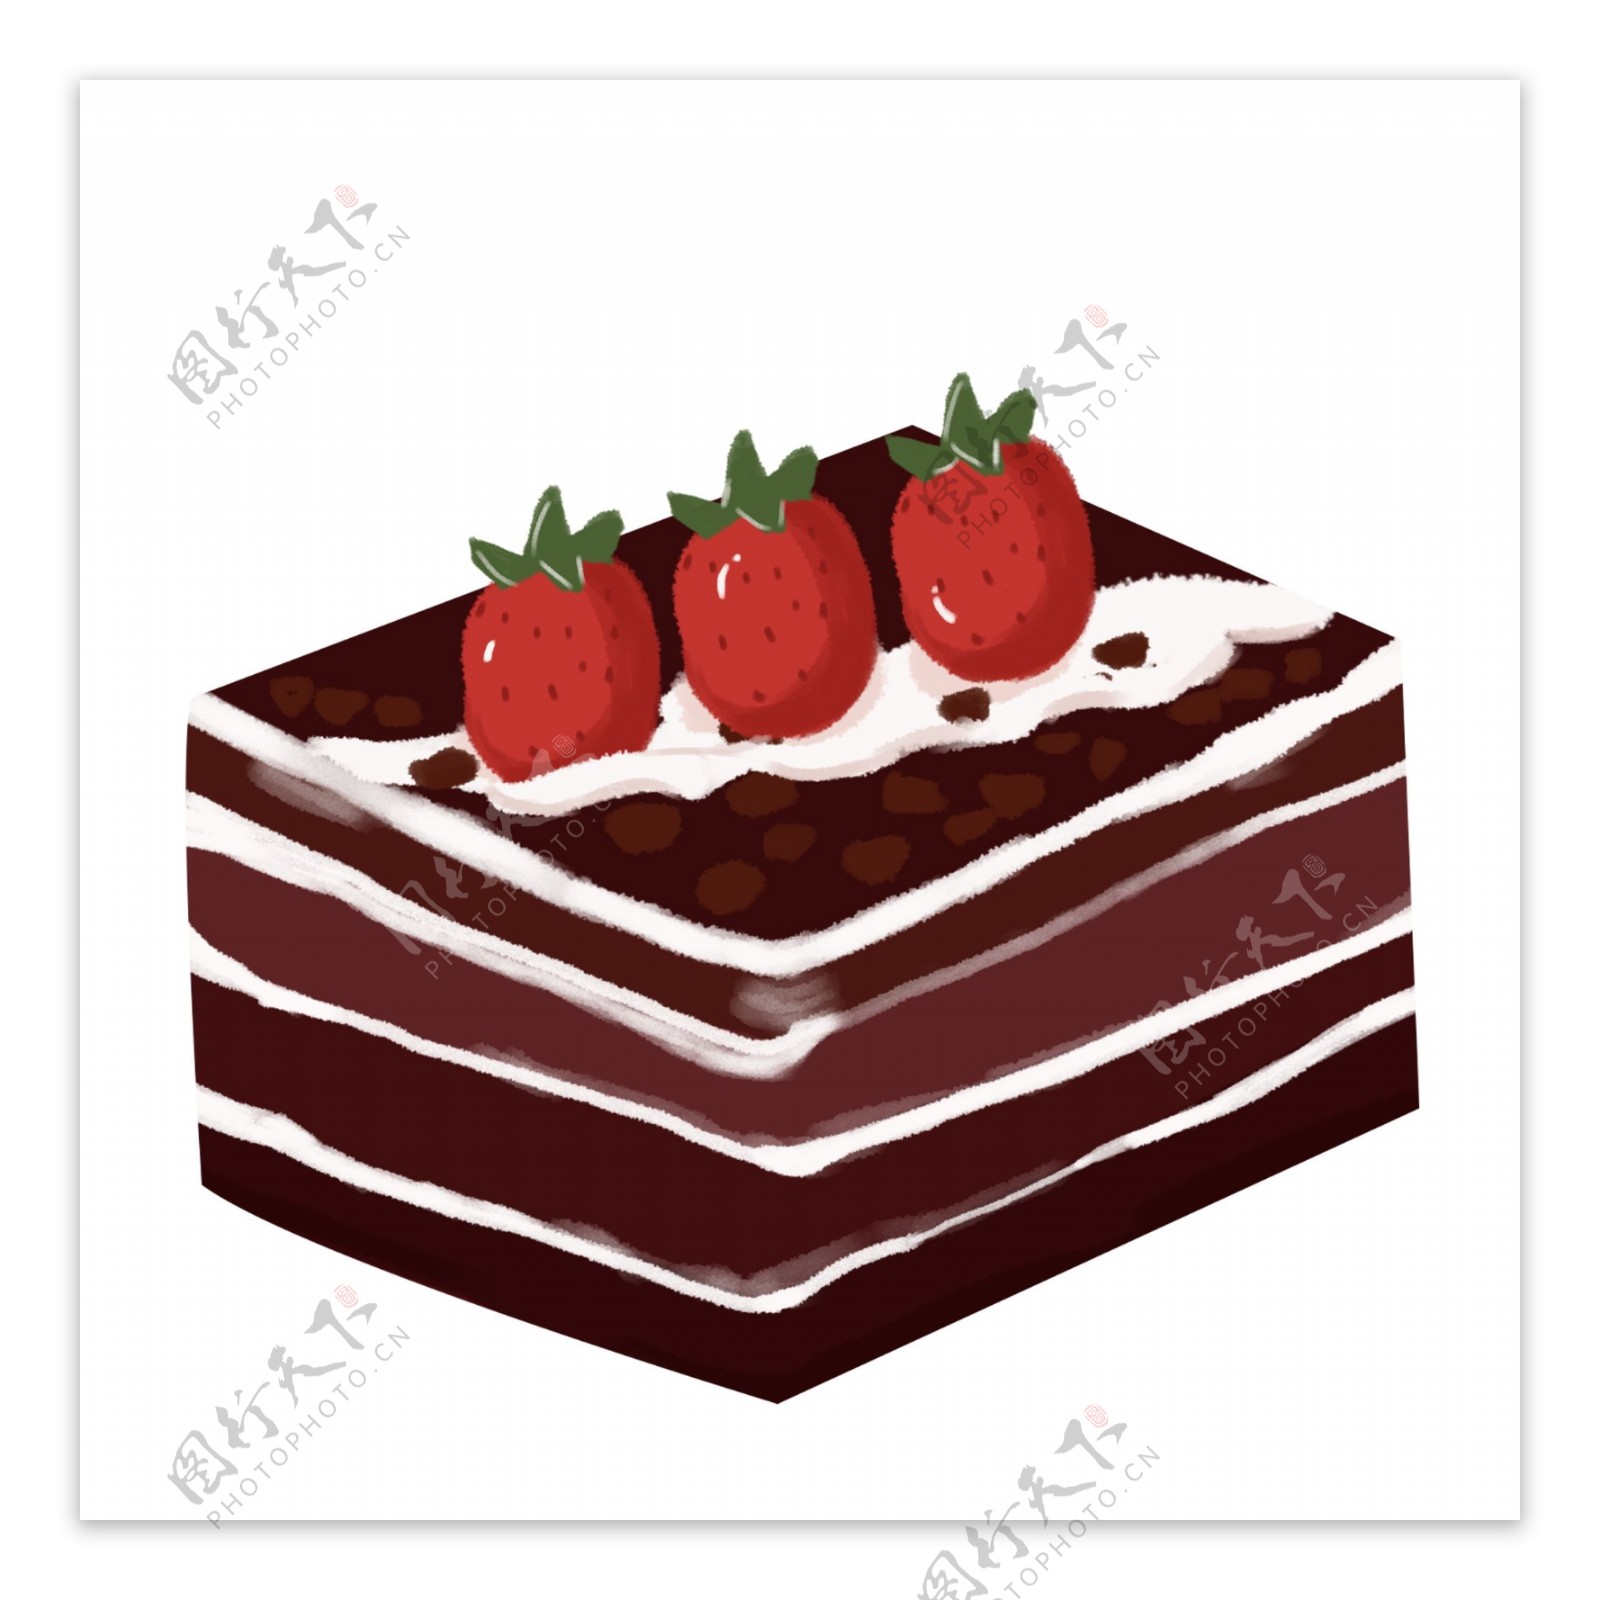 巧克力草莓蛋糕设计素材